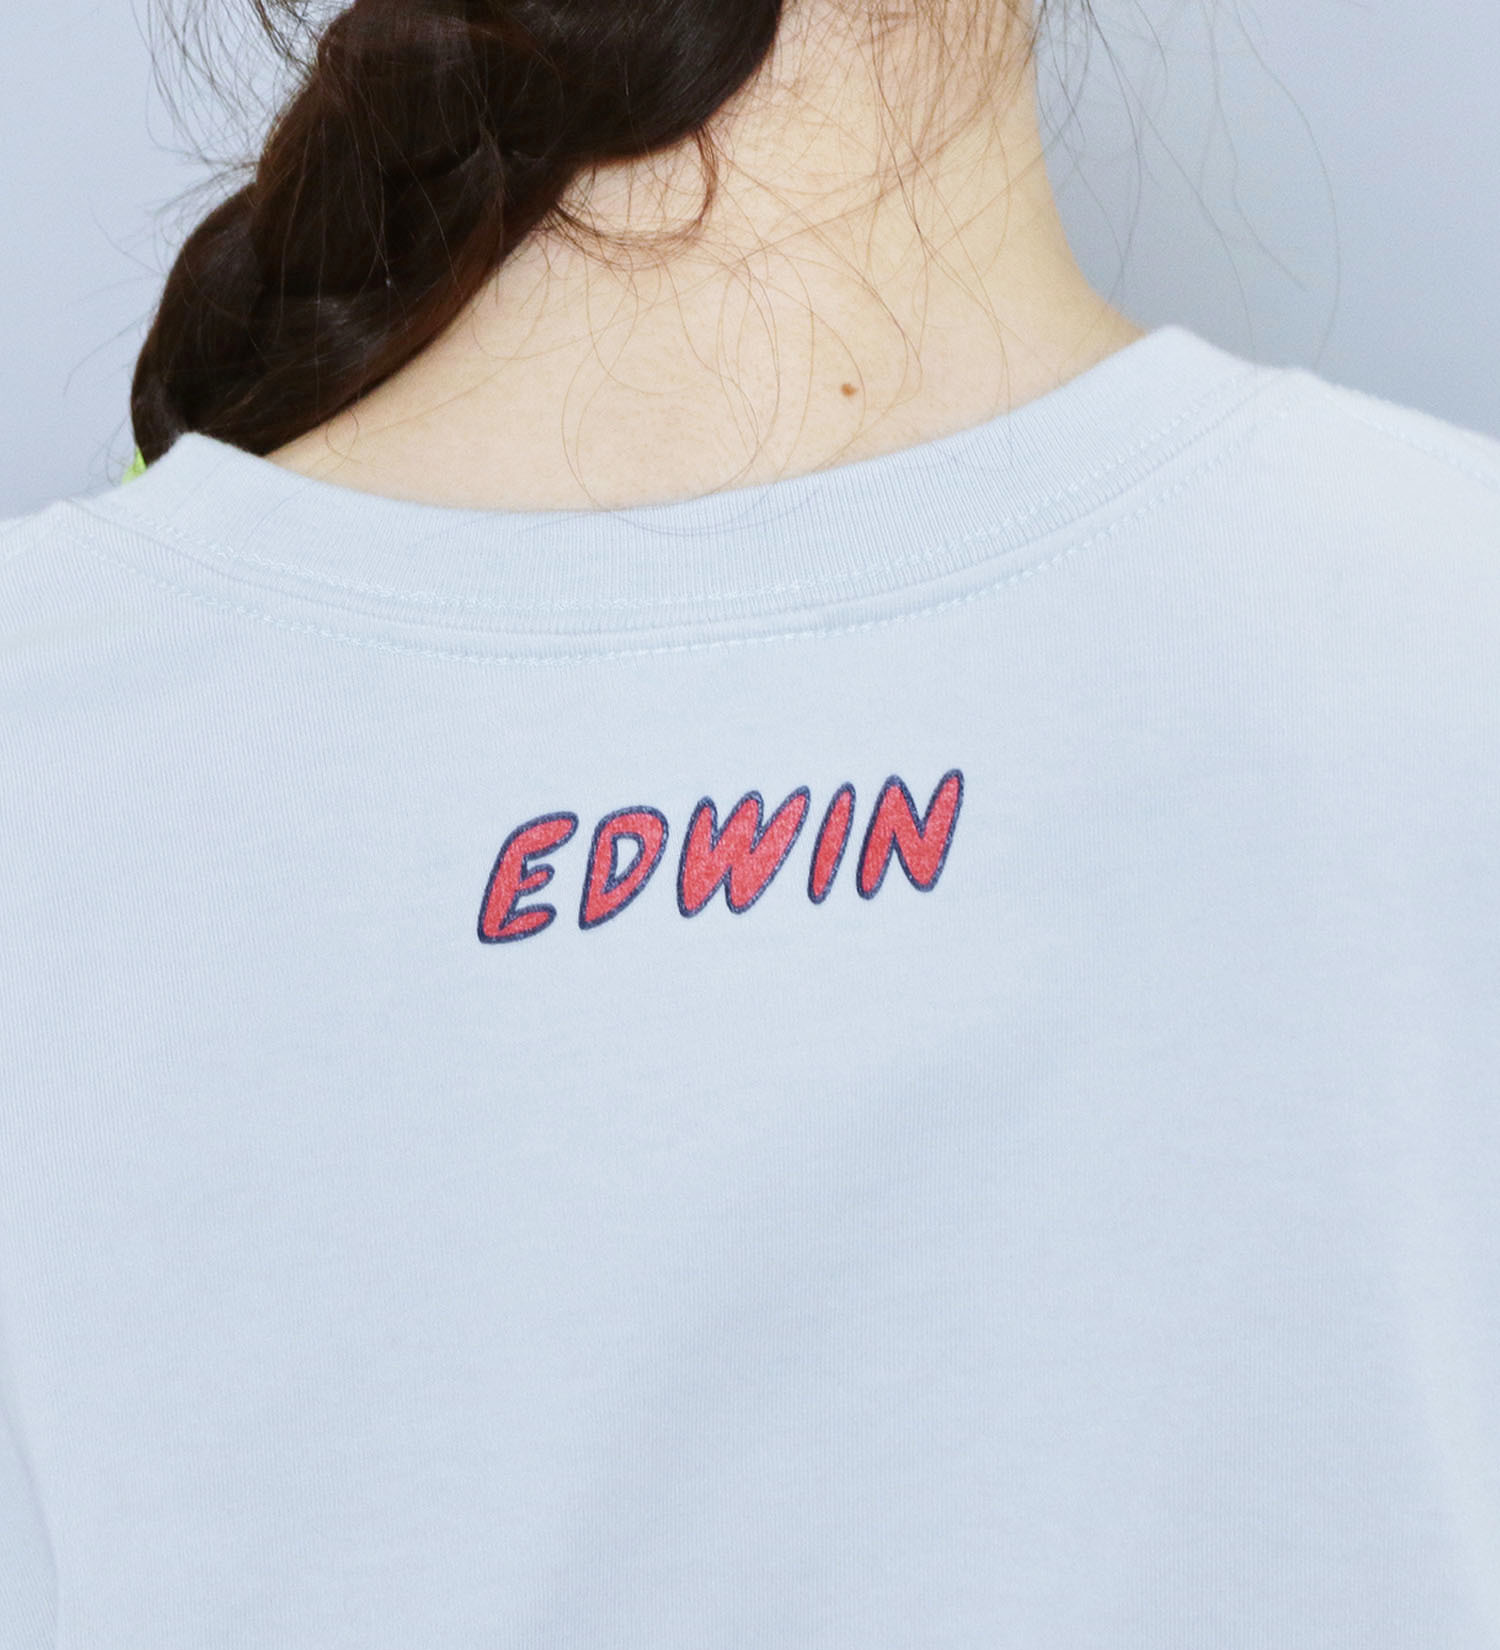 EDWIN(エドウイン)の【SALE】【ユニセックス】EDWIN x タケウチアツシ アーティストコラボTシャツ|トップス/Tシャツ/カットソー/メンズ|ブルー